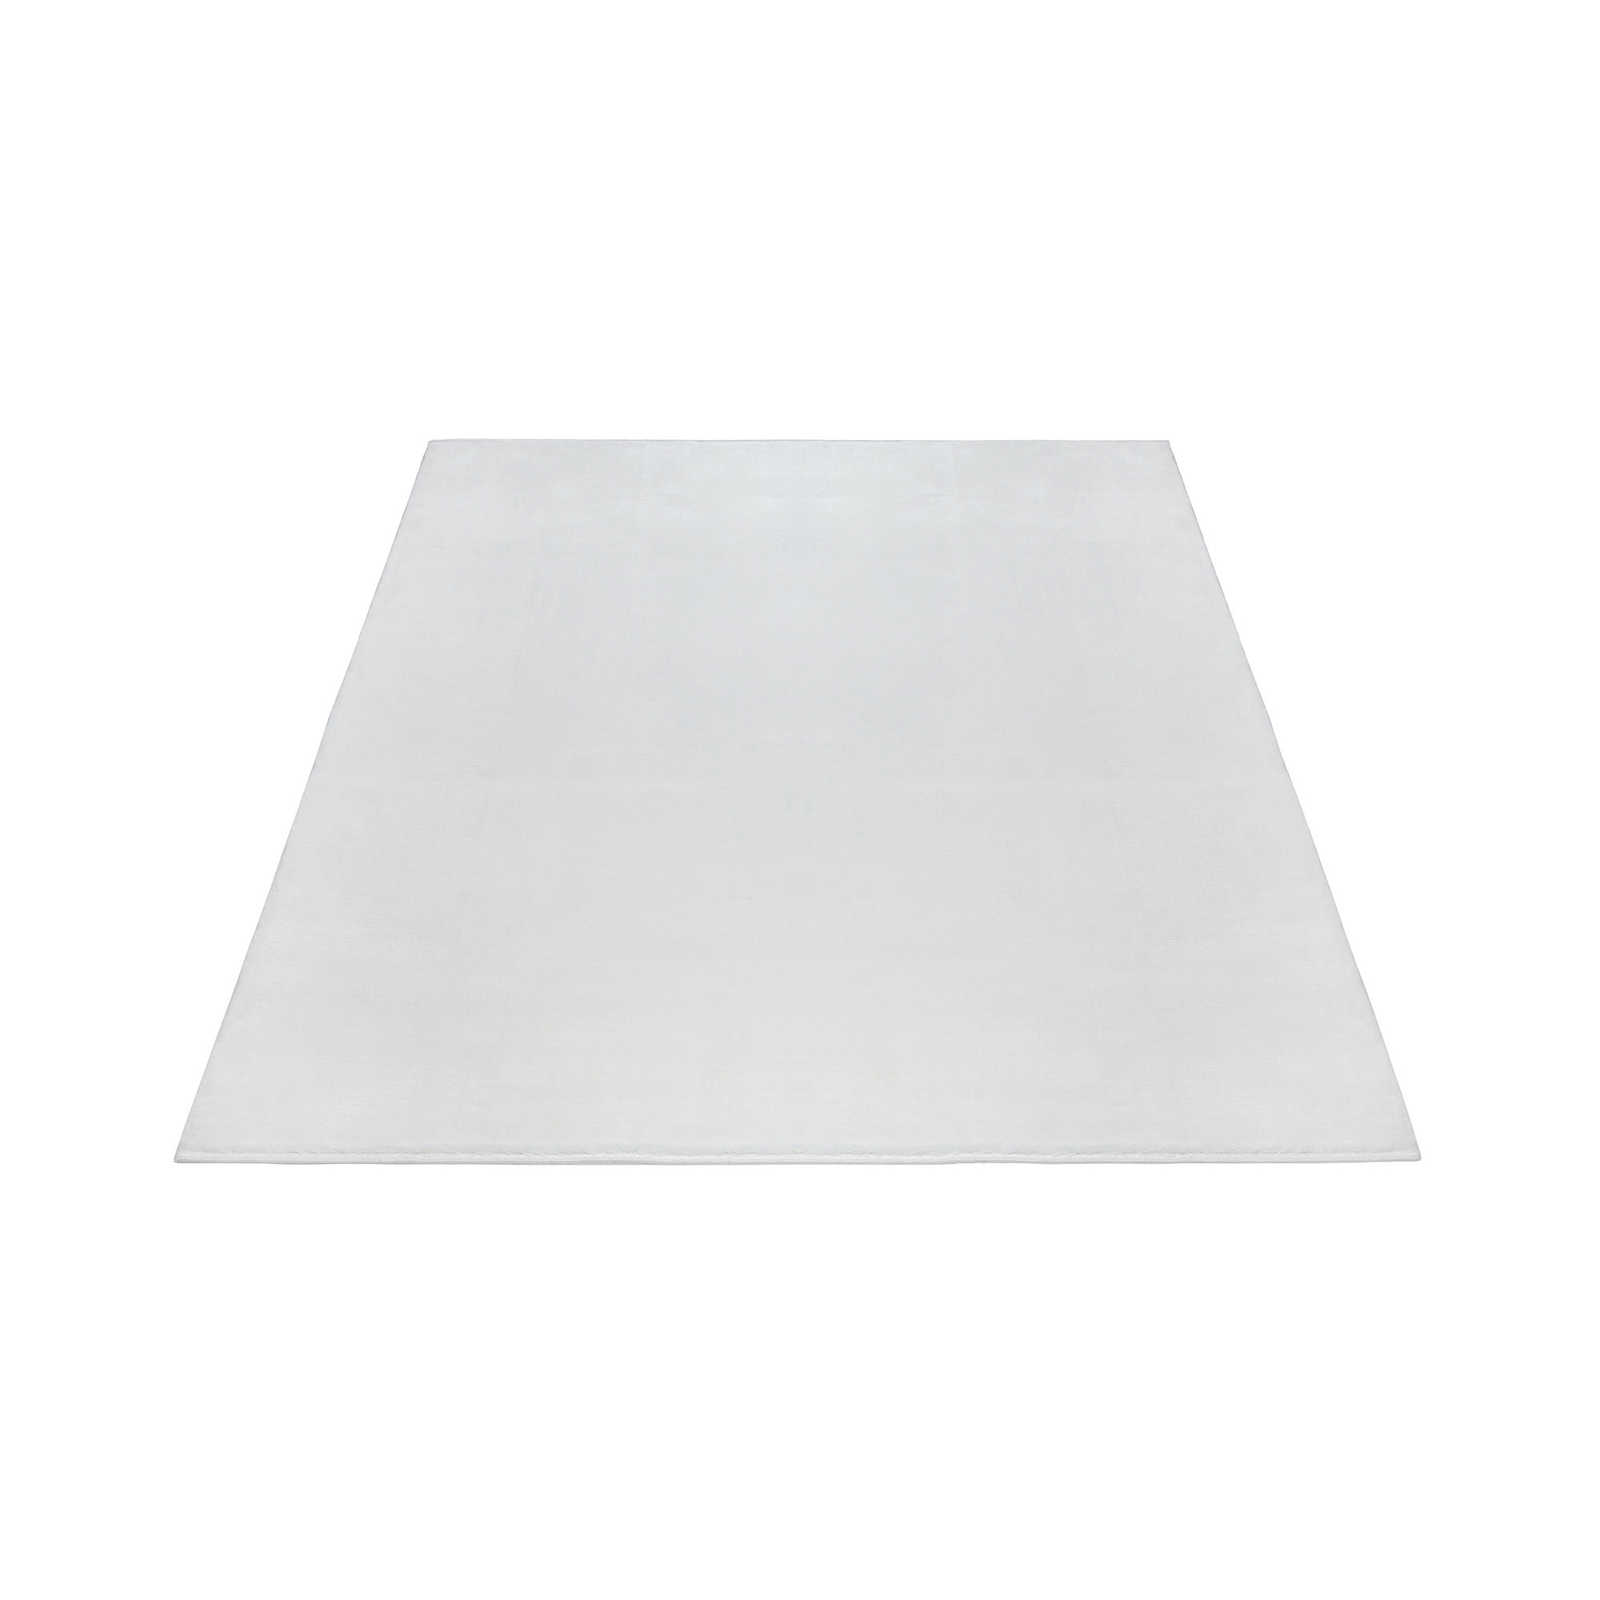 Flauschiger Hochflor Teppich in angenehmen Creme – 230 x 160 cm
